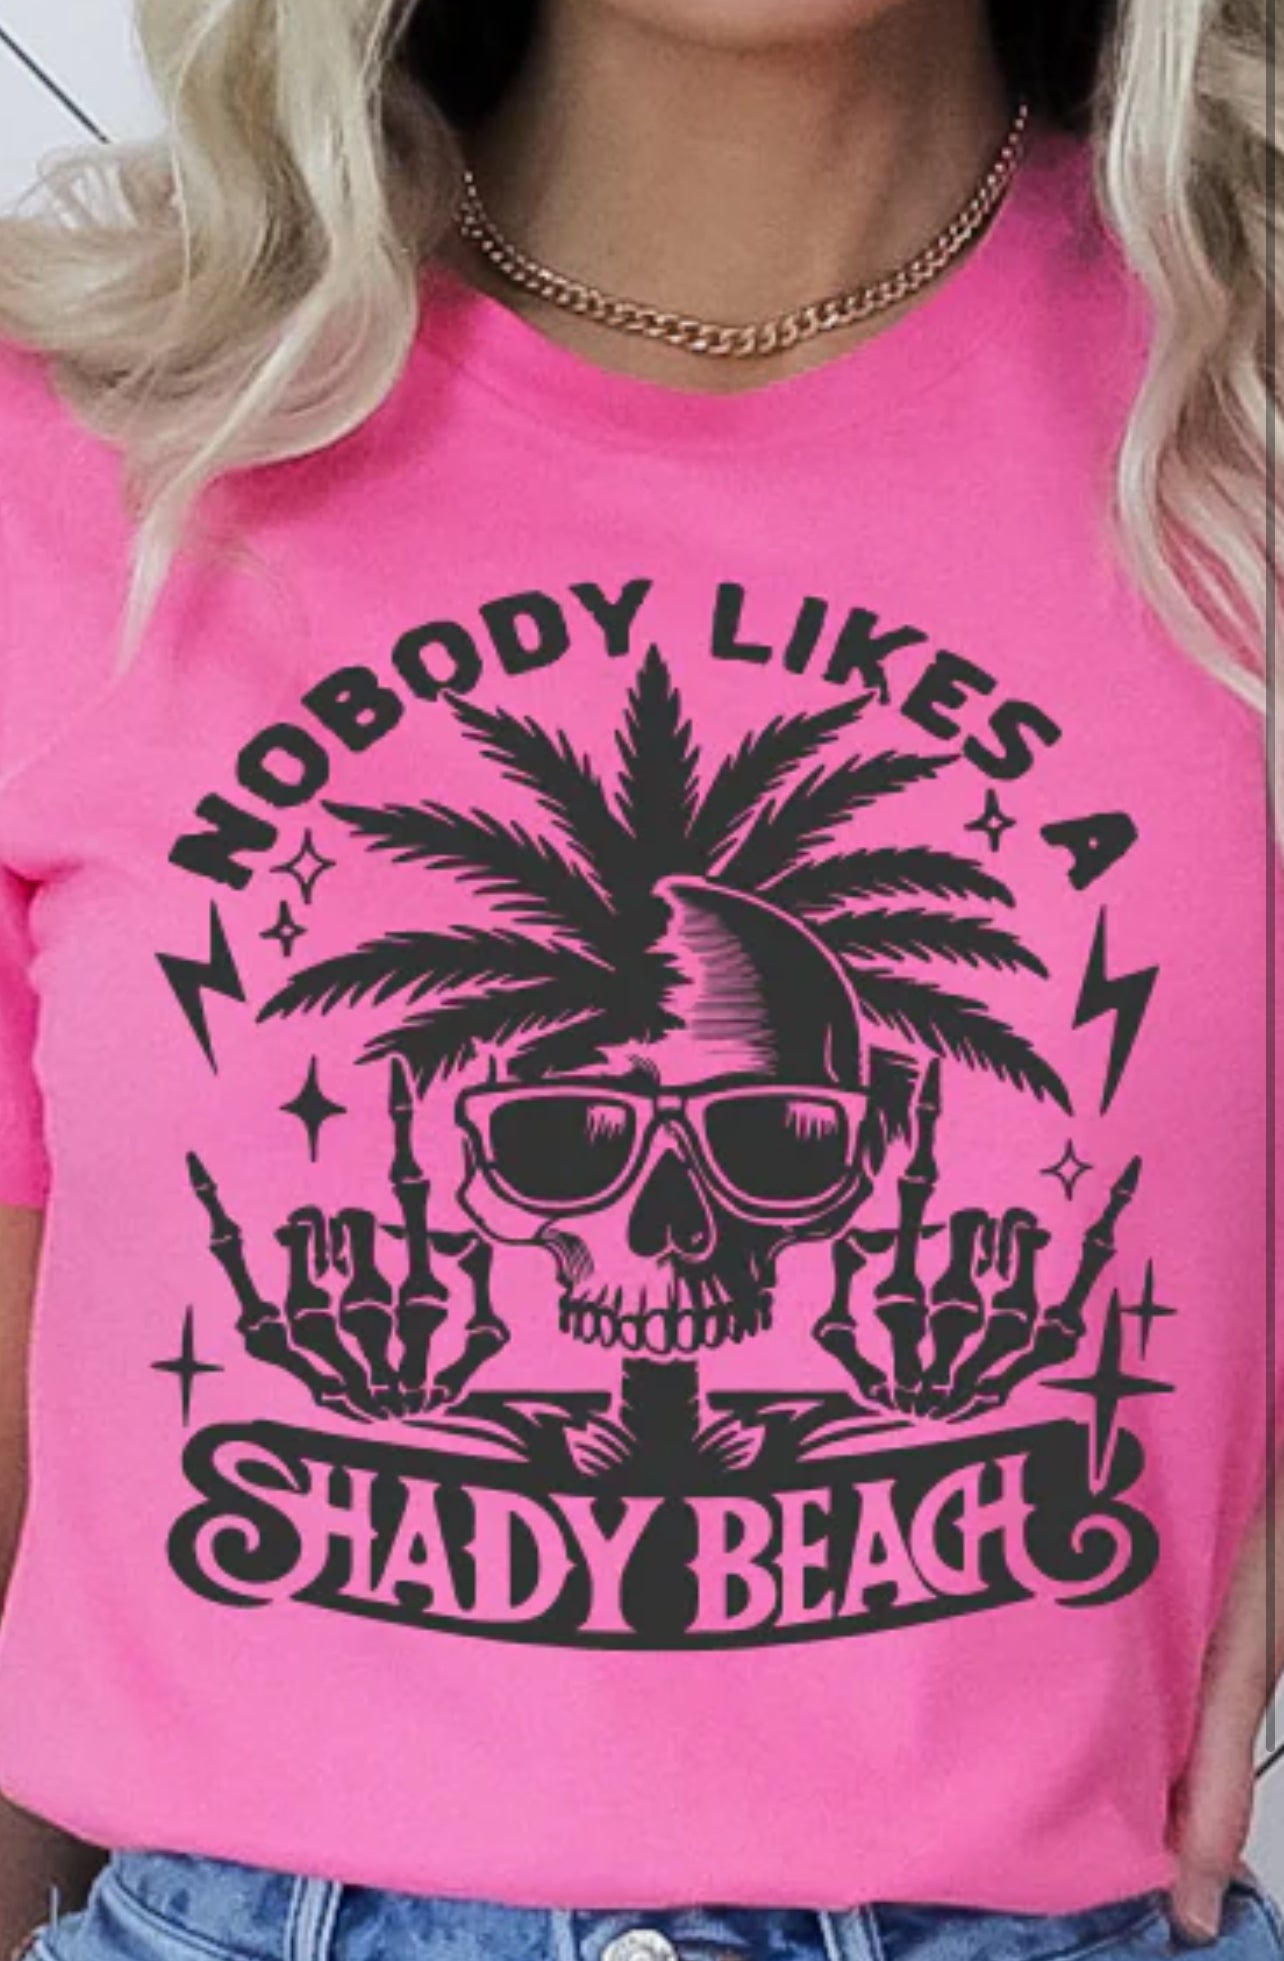 Nobody likes a Shady Beach